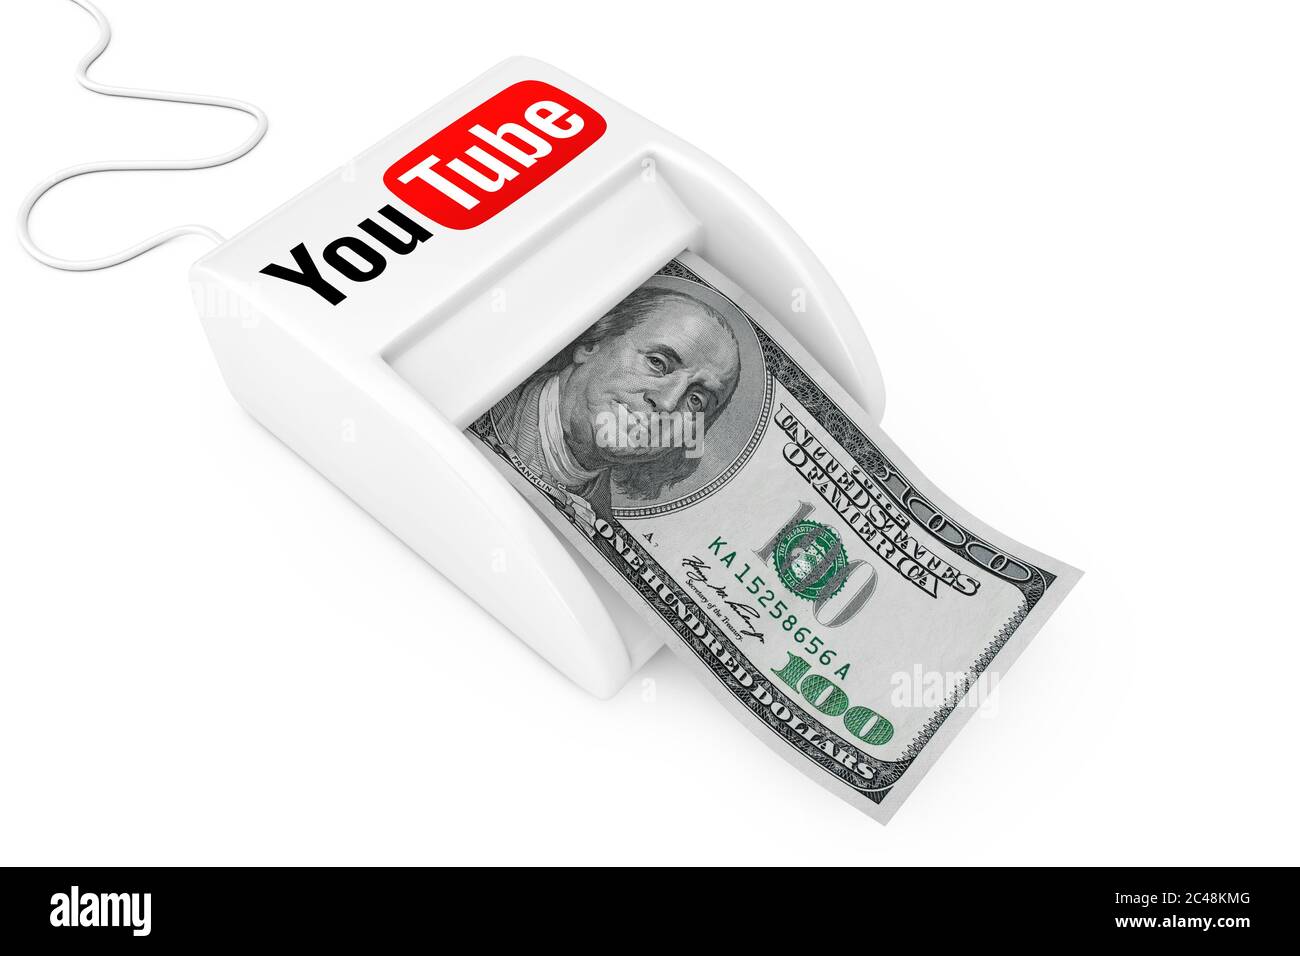 Kiếm tiền trên YouTube: Bạn có thể kiếm tiền trên YouTube chỉ bằng cách chia sẻ những nội dung thú vị và hấp dẫn của riêng mình. Với hàng triệu người truy cập mỗi ngày, YouTube là nơi lý tưởng để đưa ra ý tưởng, kinh doanh và kiếm tiền.